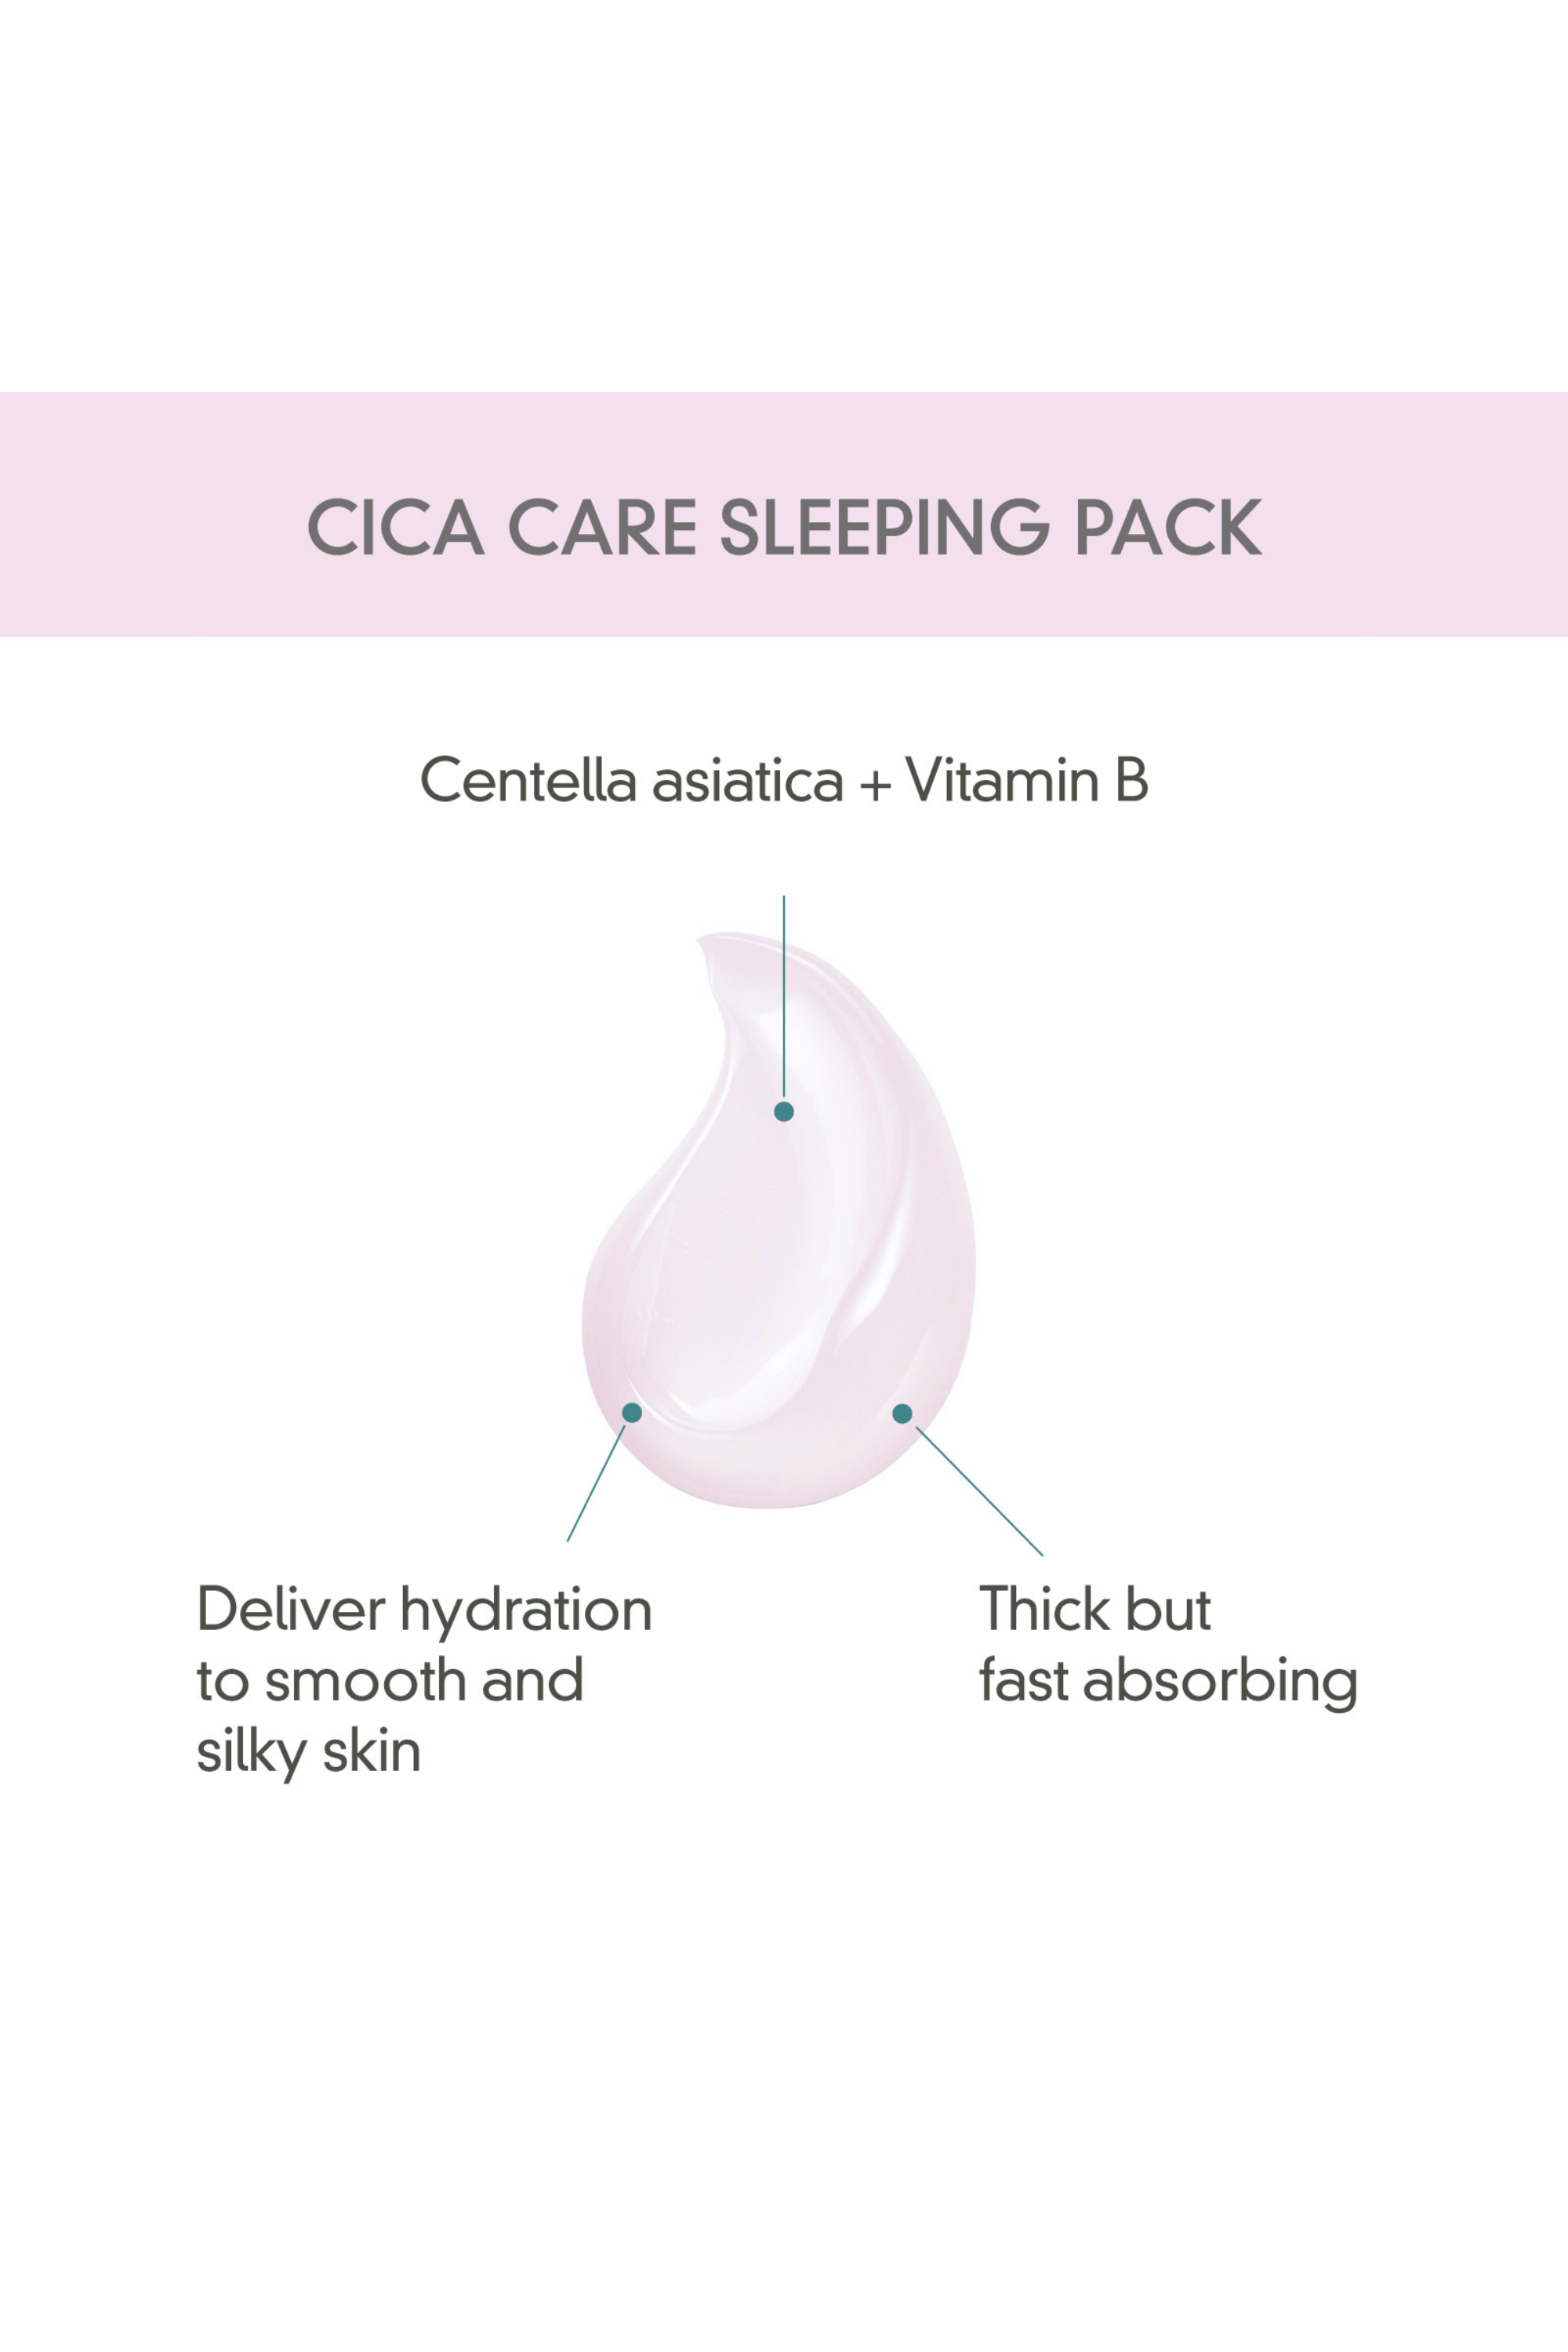 Cica Care Full Set ($104 Value) - Rovectin Skin Essentials